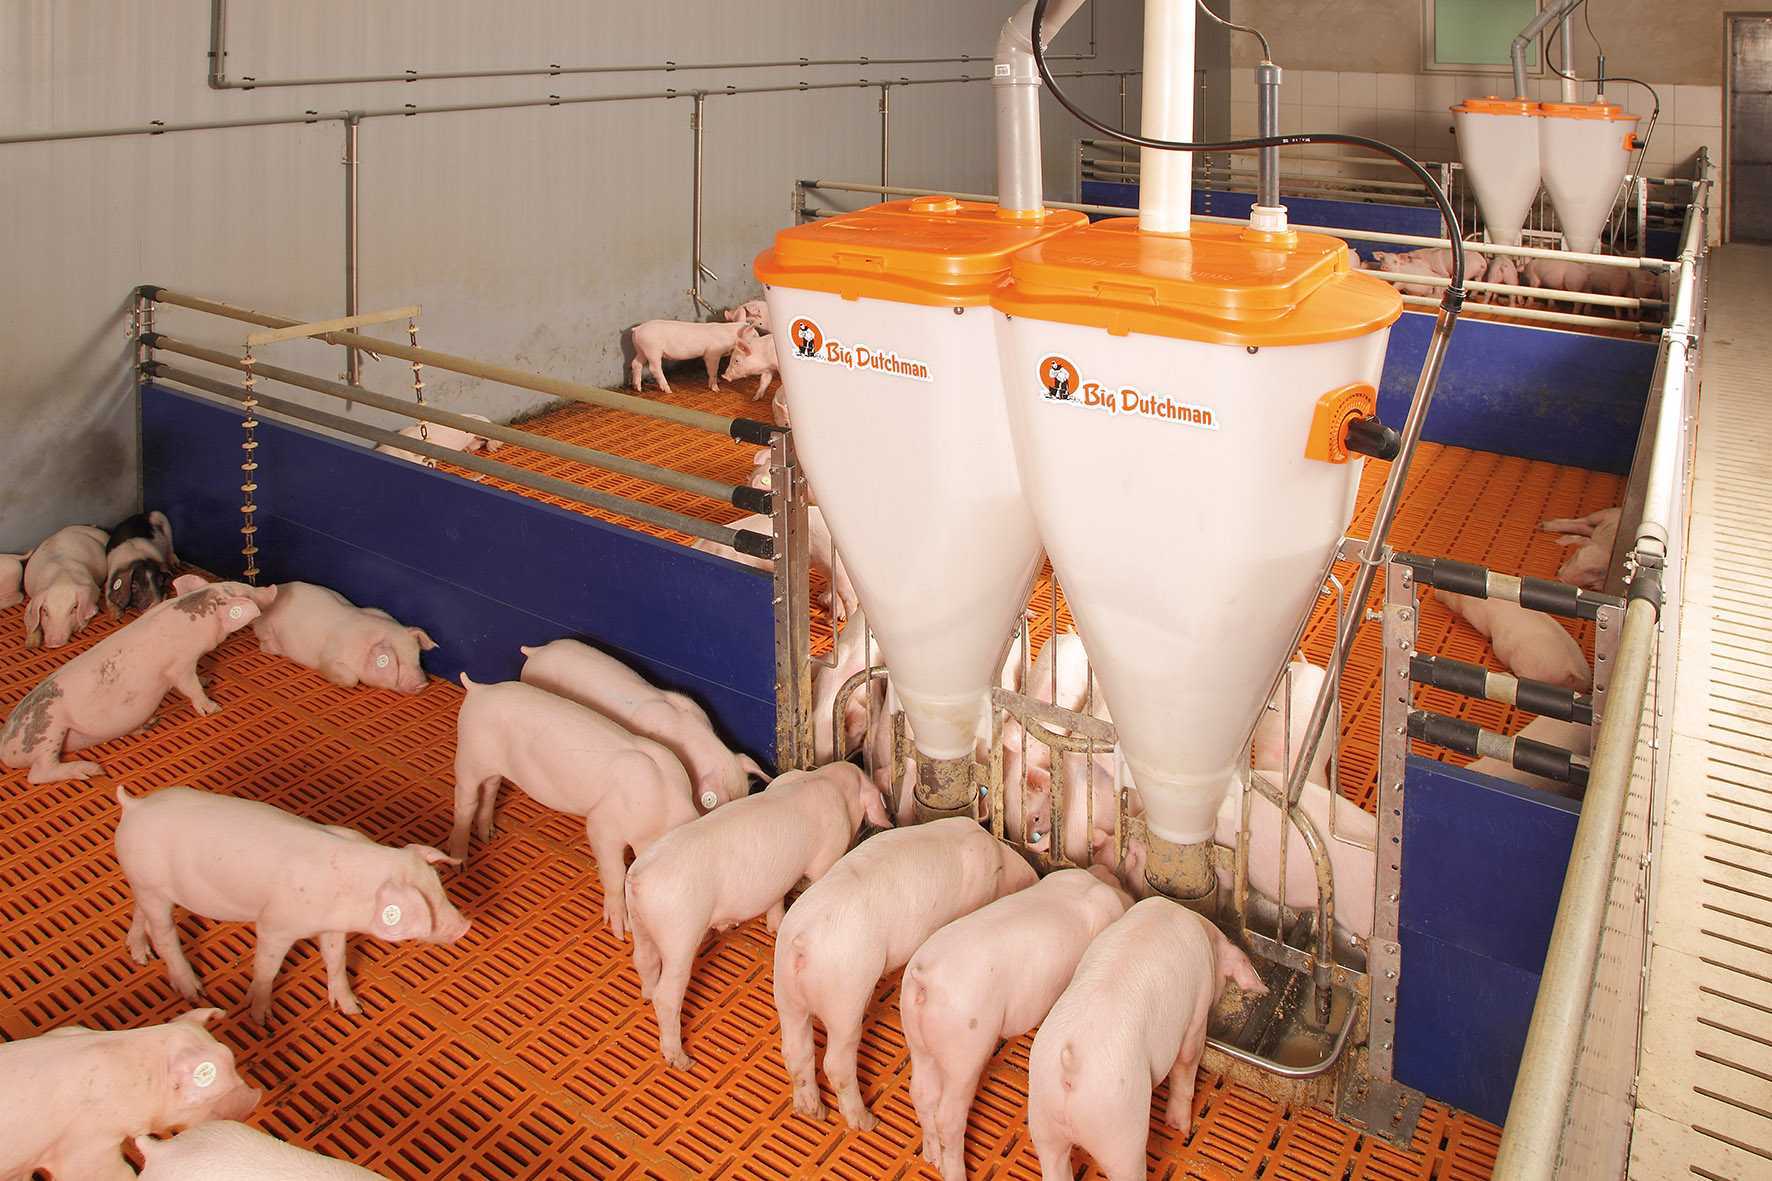 Рекомендации по кормлению свиней — свиноводство -> кормление свиней